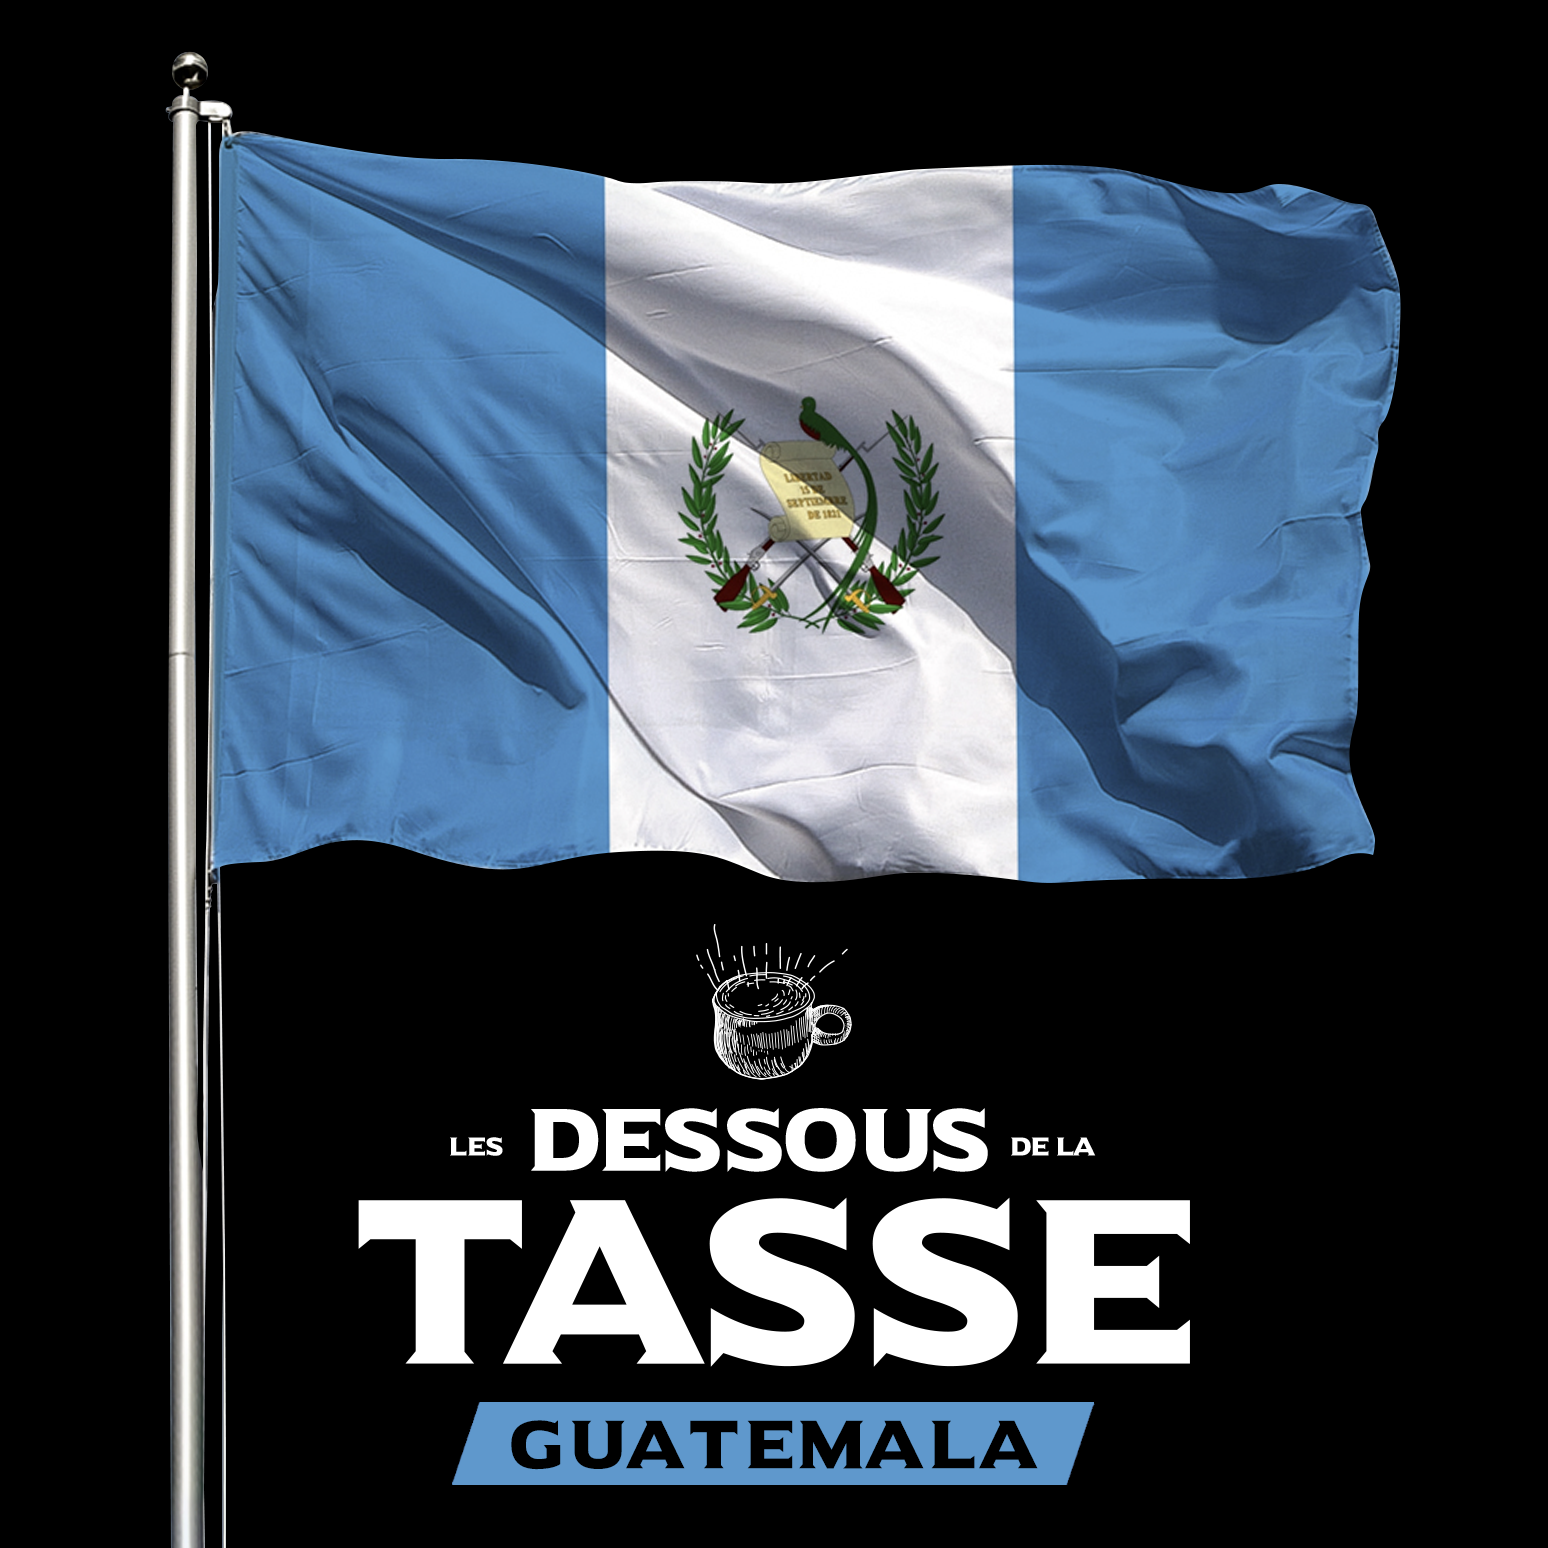 Les dessous de la tasse: Guatemala